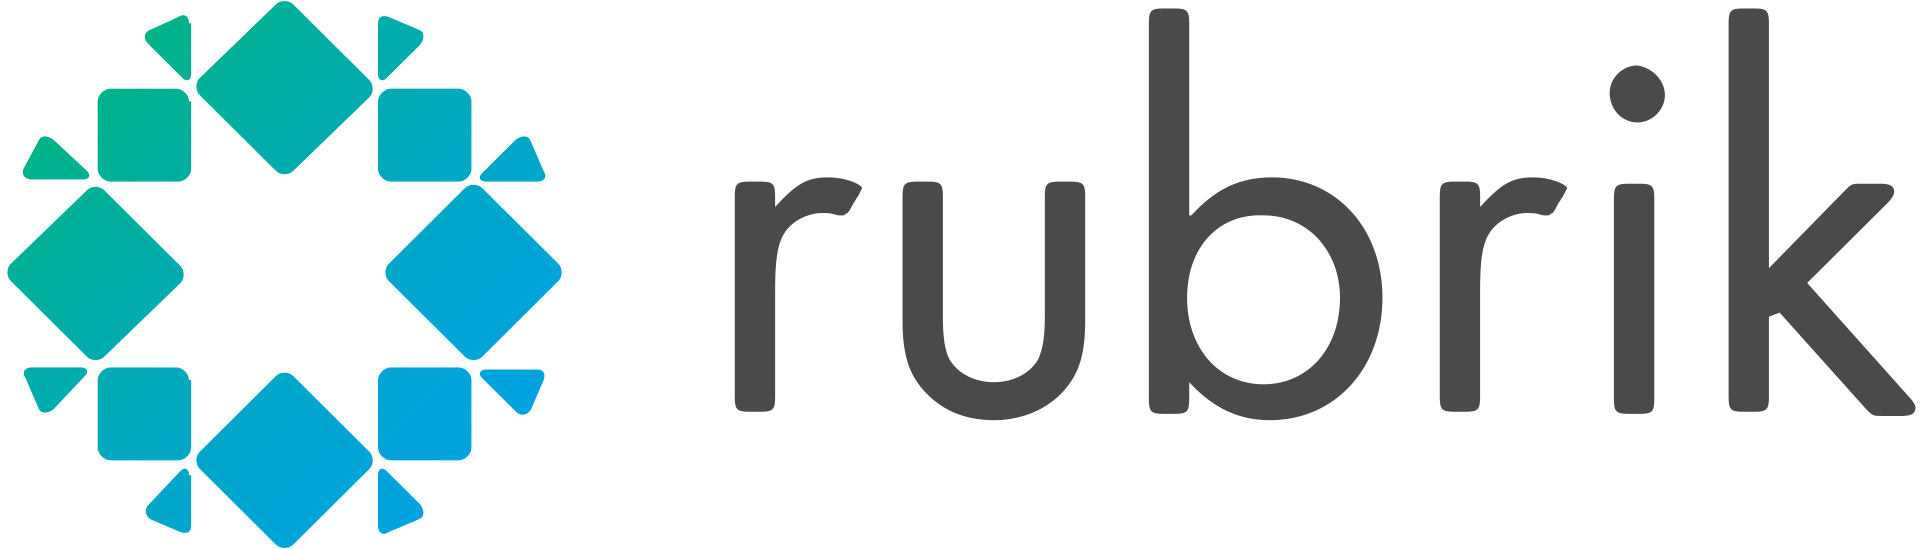 Rubrik logo